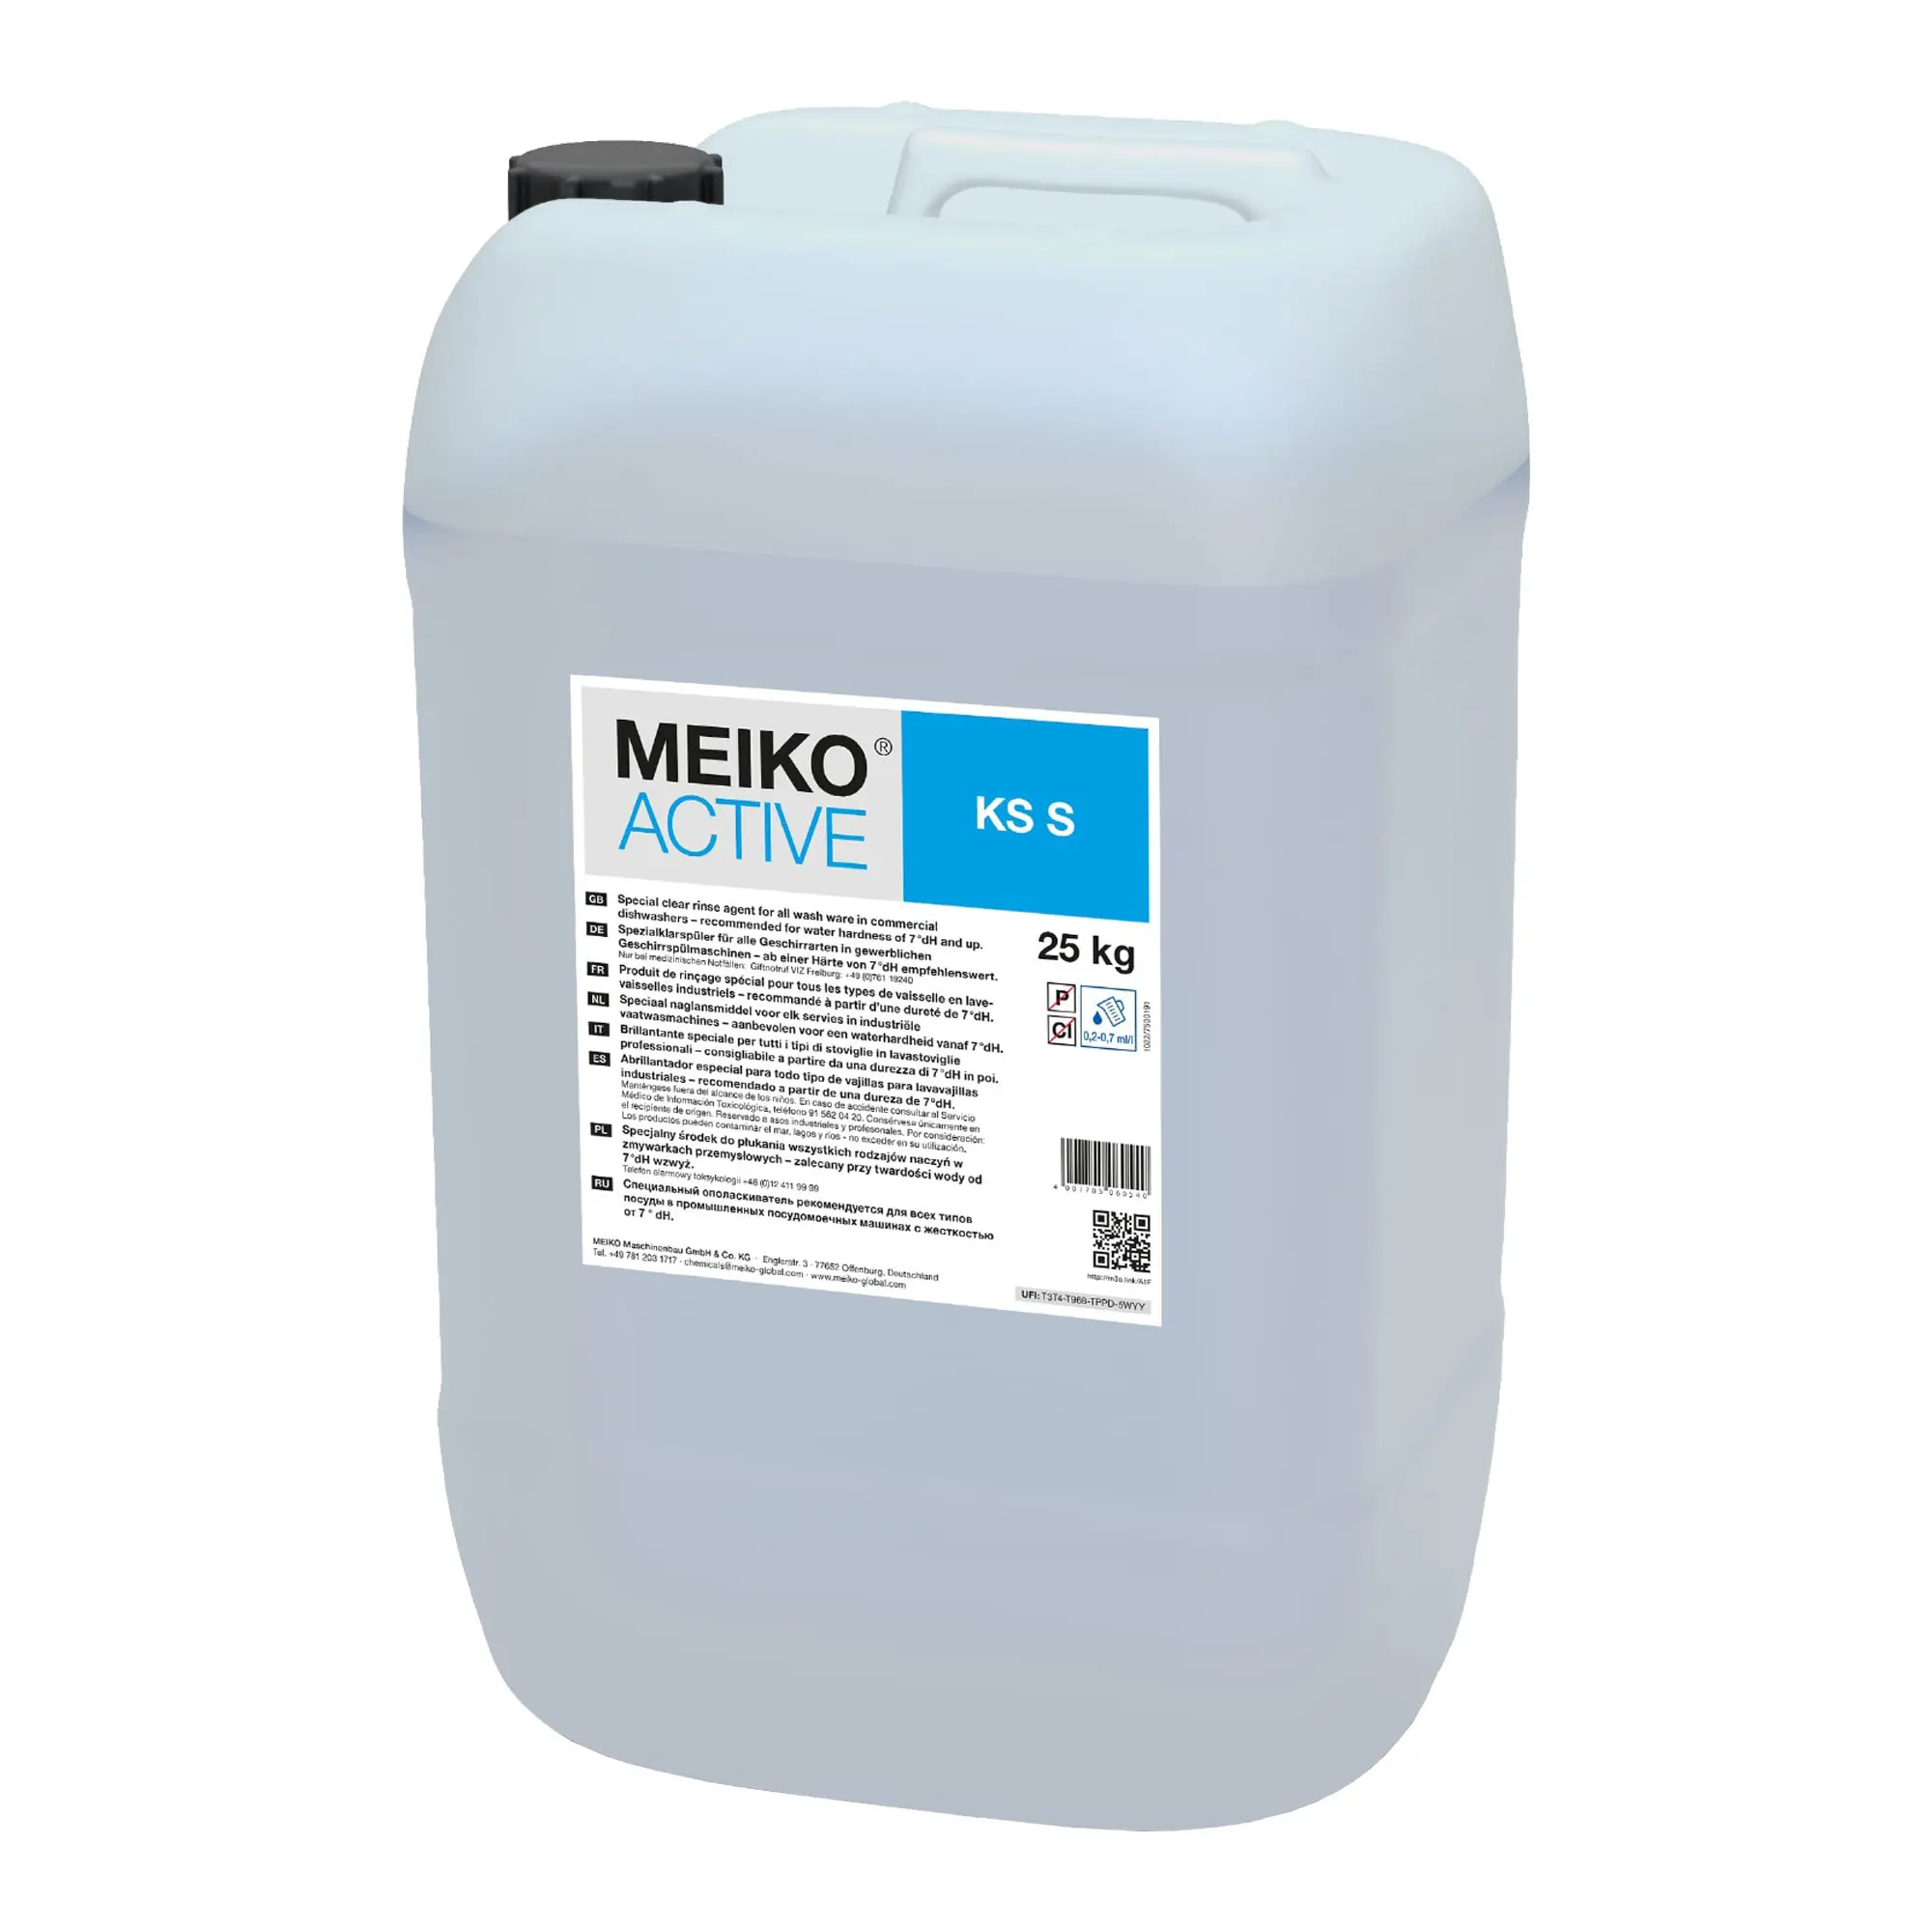 Meiko Active KS S Spezial-Klarspüler für höhere Wasserhärten